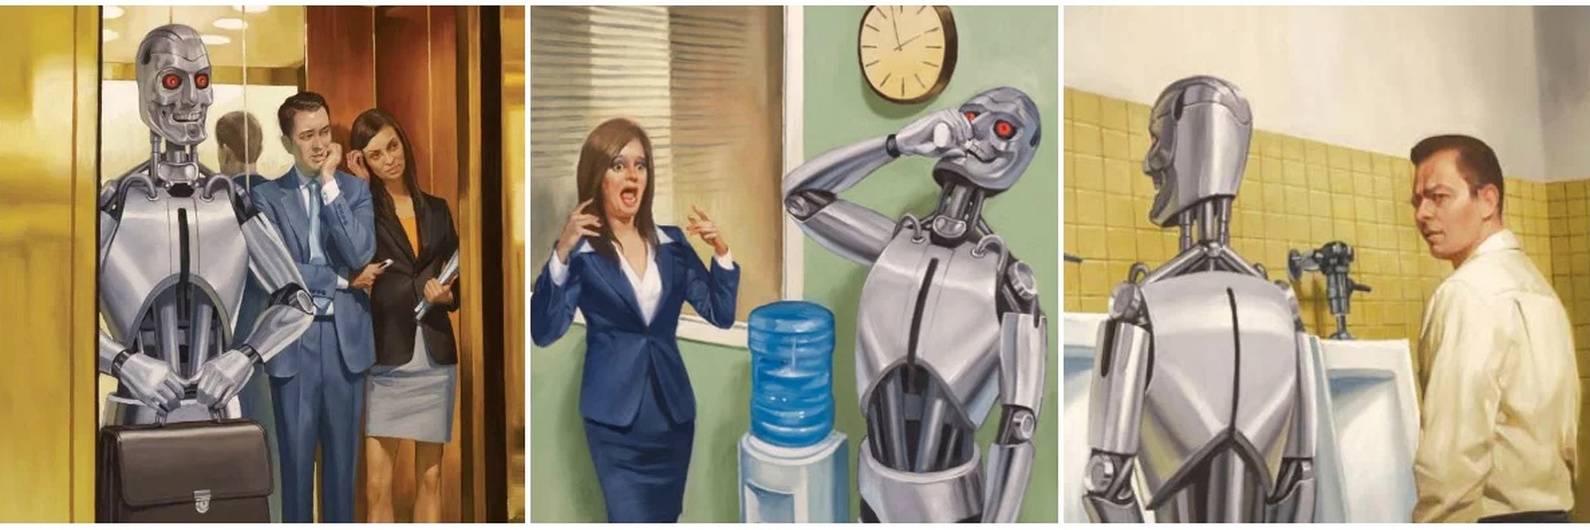 Превращение в робота. Роботы вместо людей. Превращение человека в робота. Роботы заменят людей. Искусственный интеллект против человека.